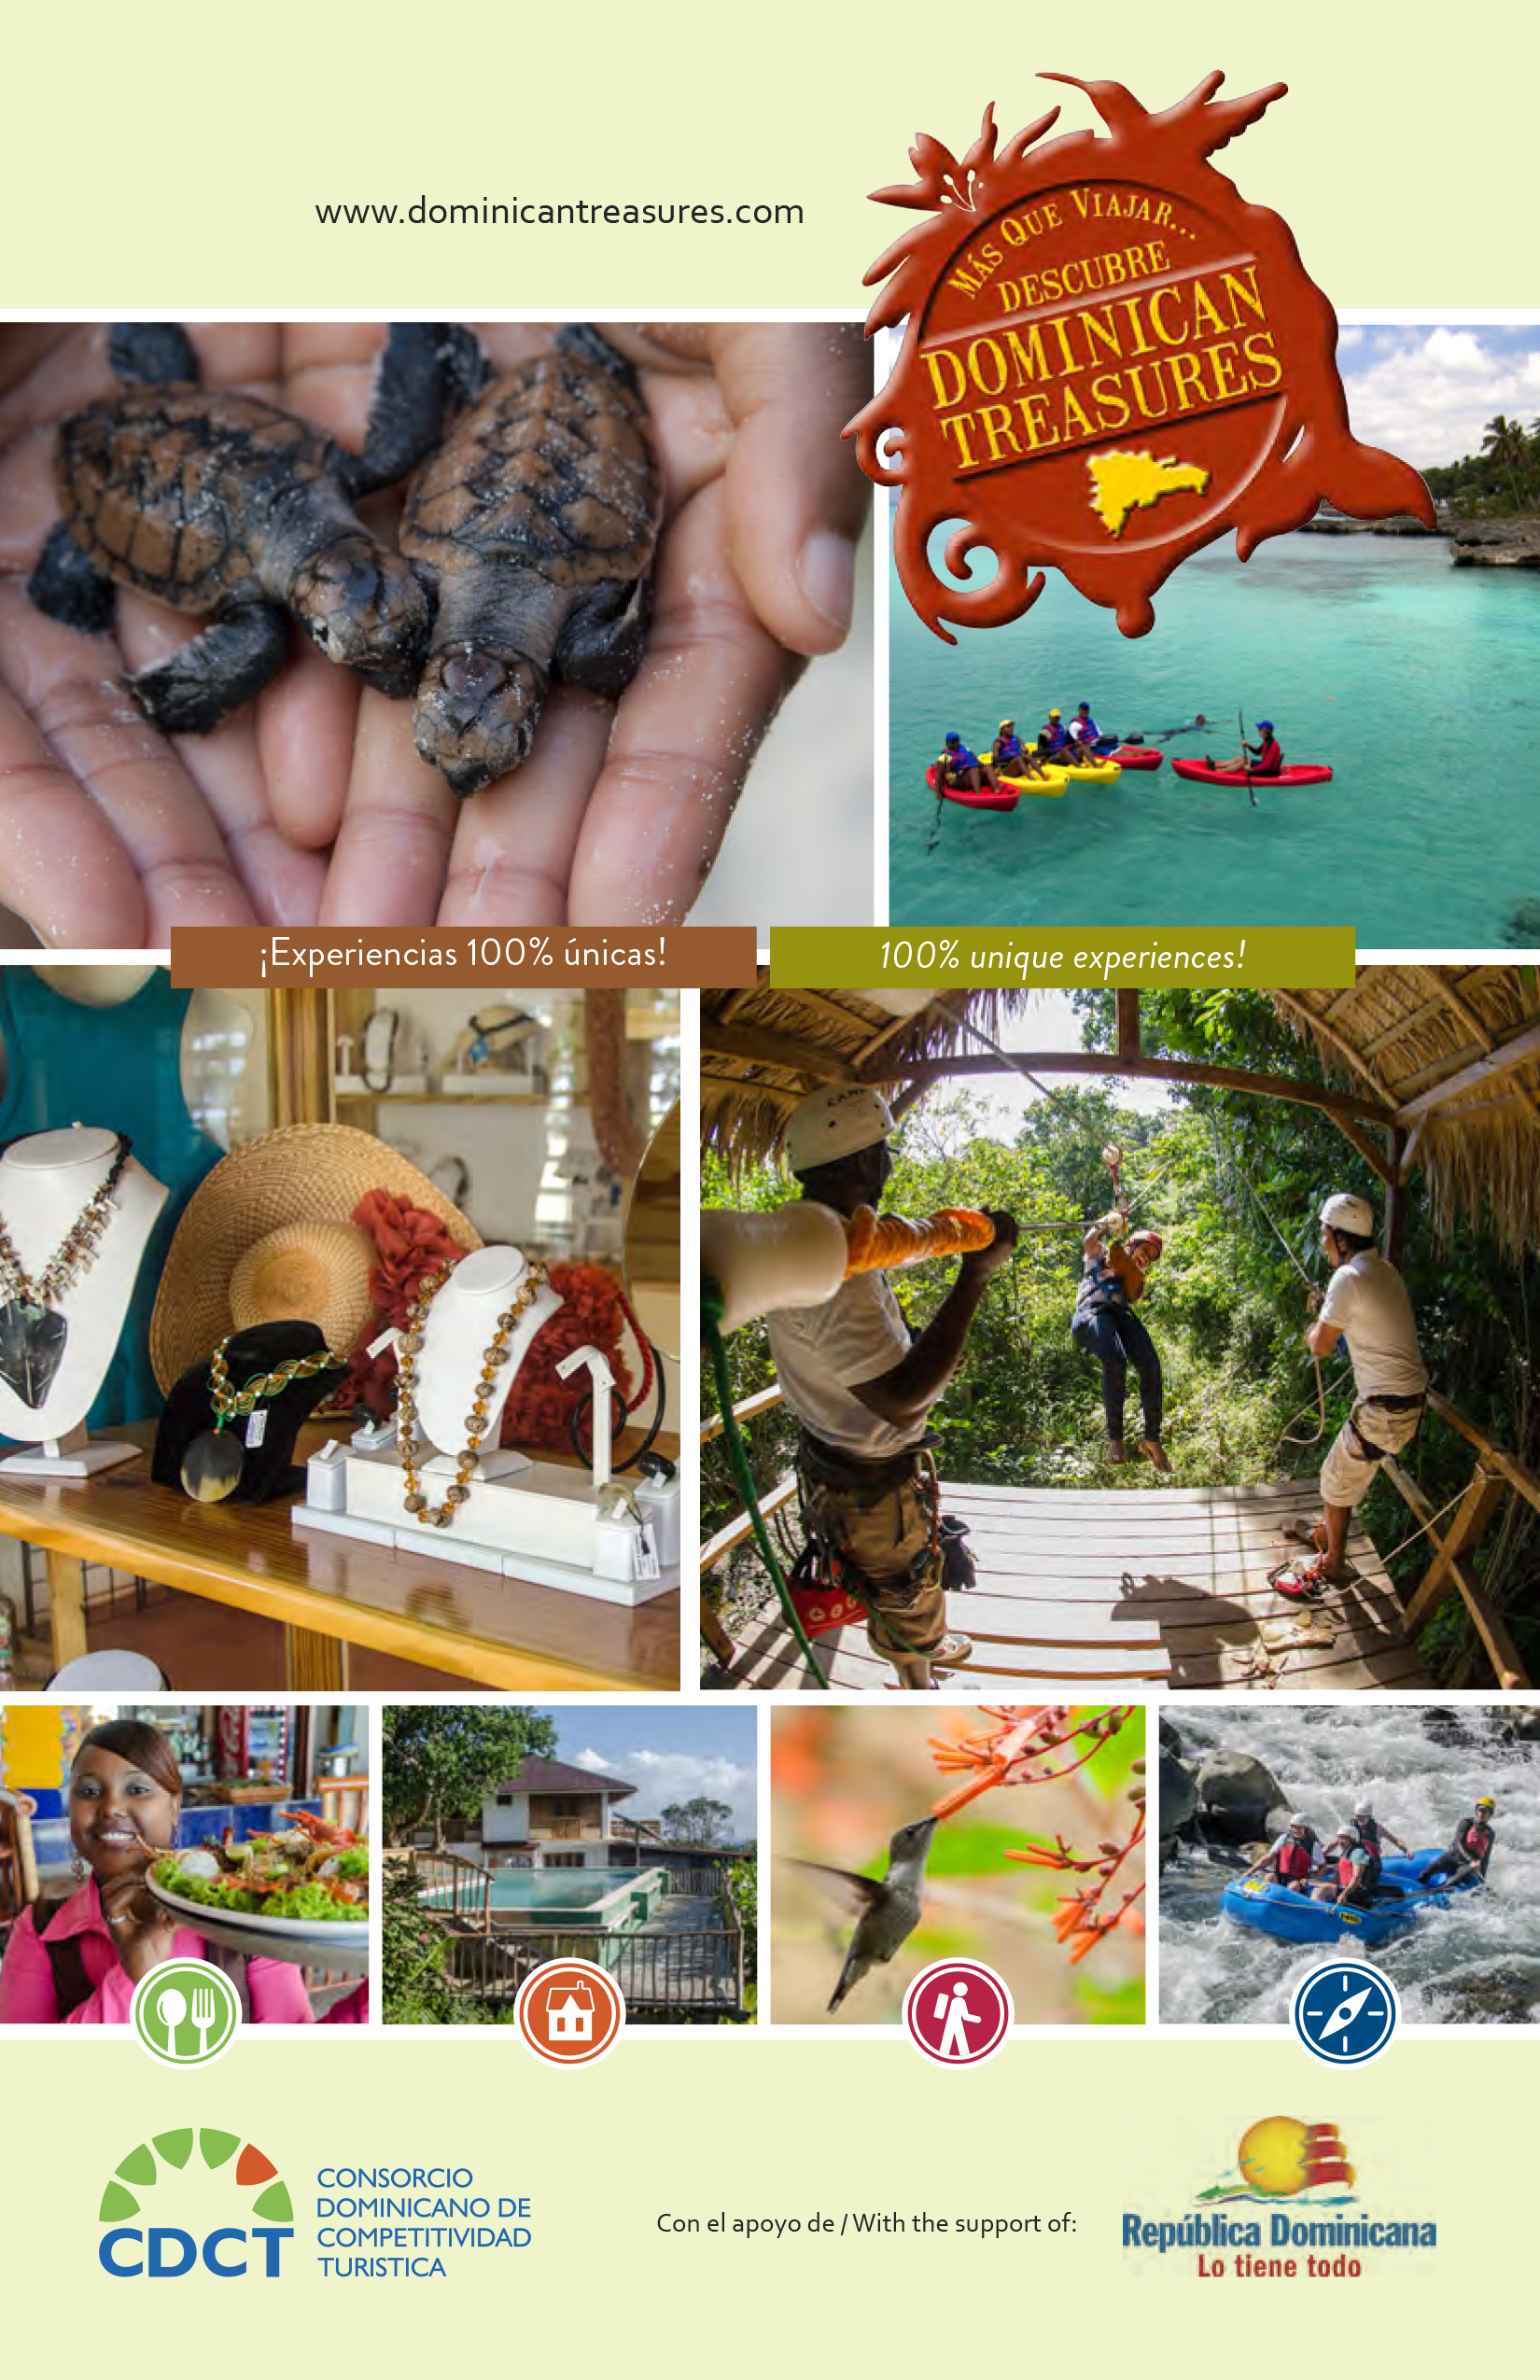 El Consorcio Dominicano de Competitividad Turística (CDCT) lanzó su guía “Dominican Treasures”